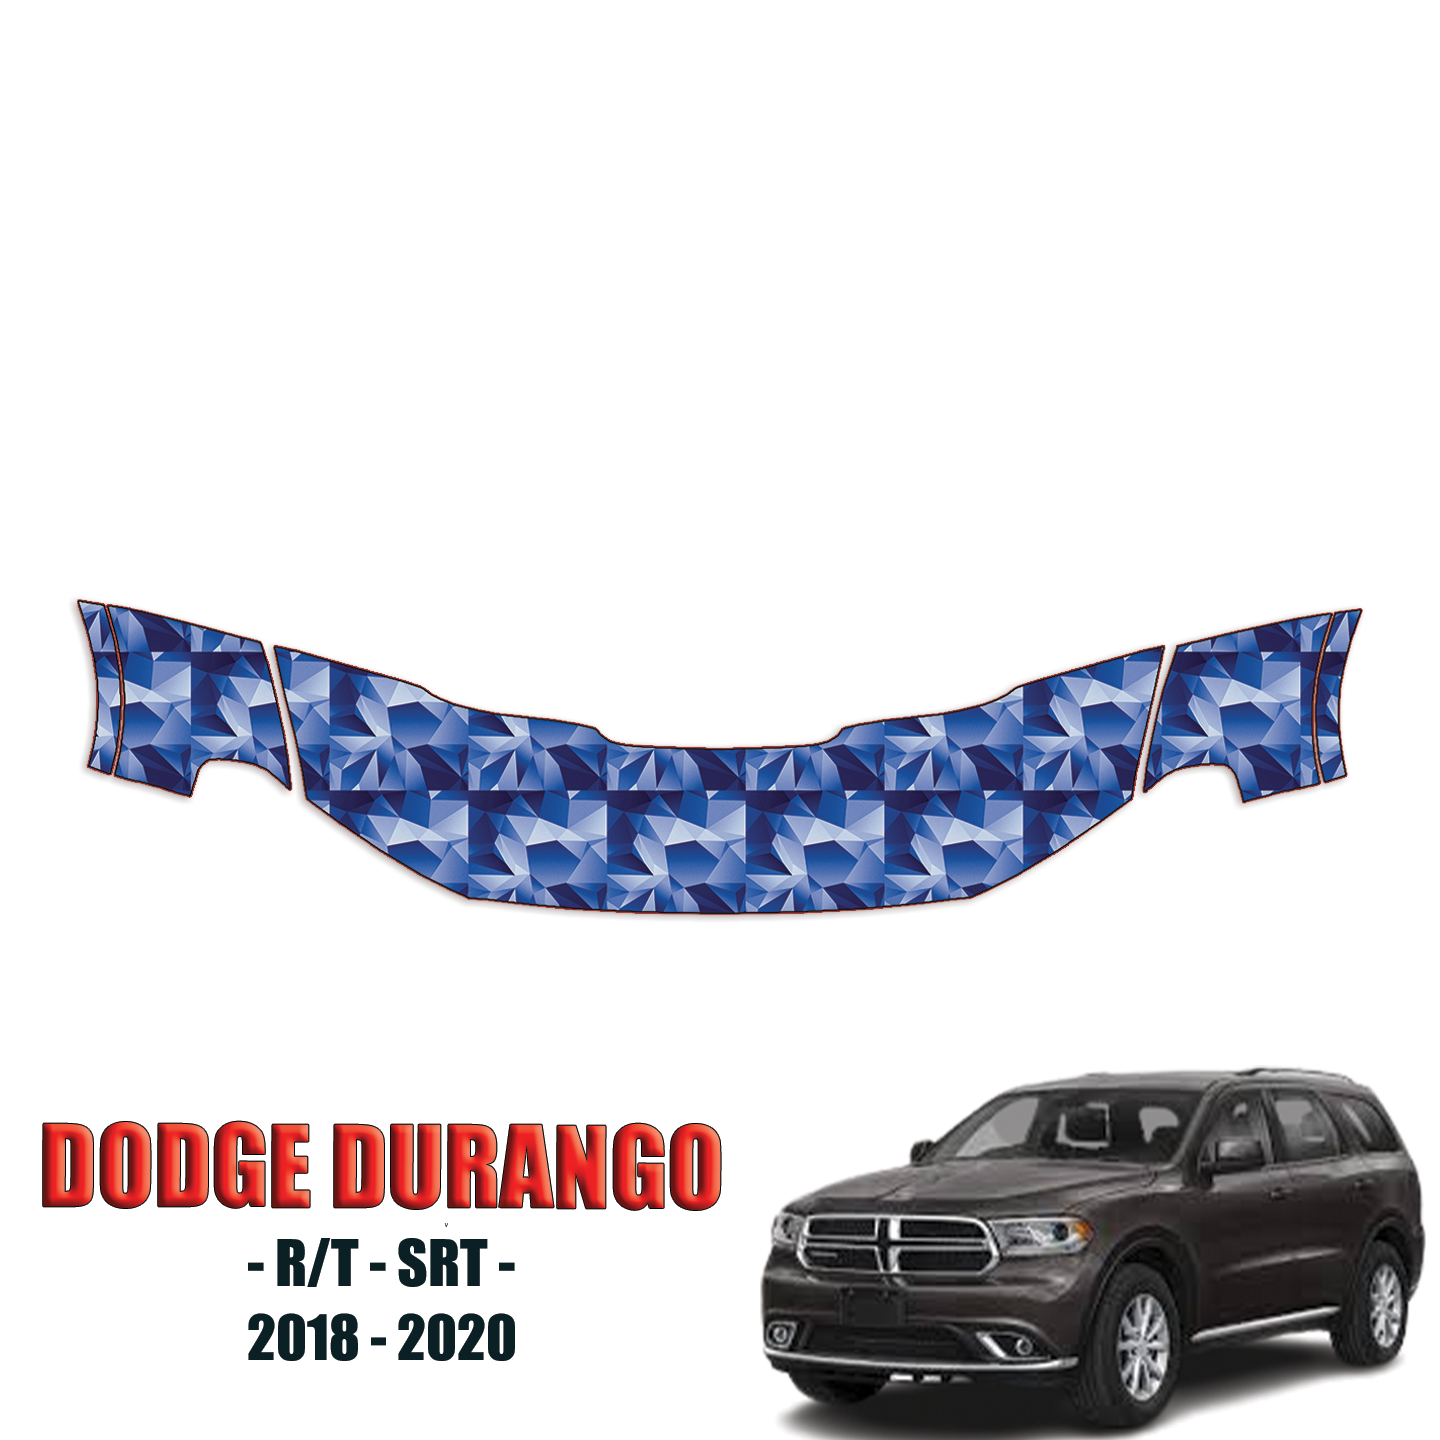 2018-2020 Dodge Durango – R/T, SRT Precut Paint Protection Kit (PPF) – Partial Hood + Partial Fenders